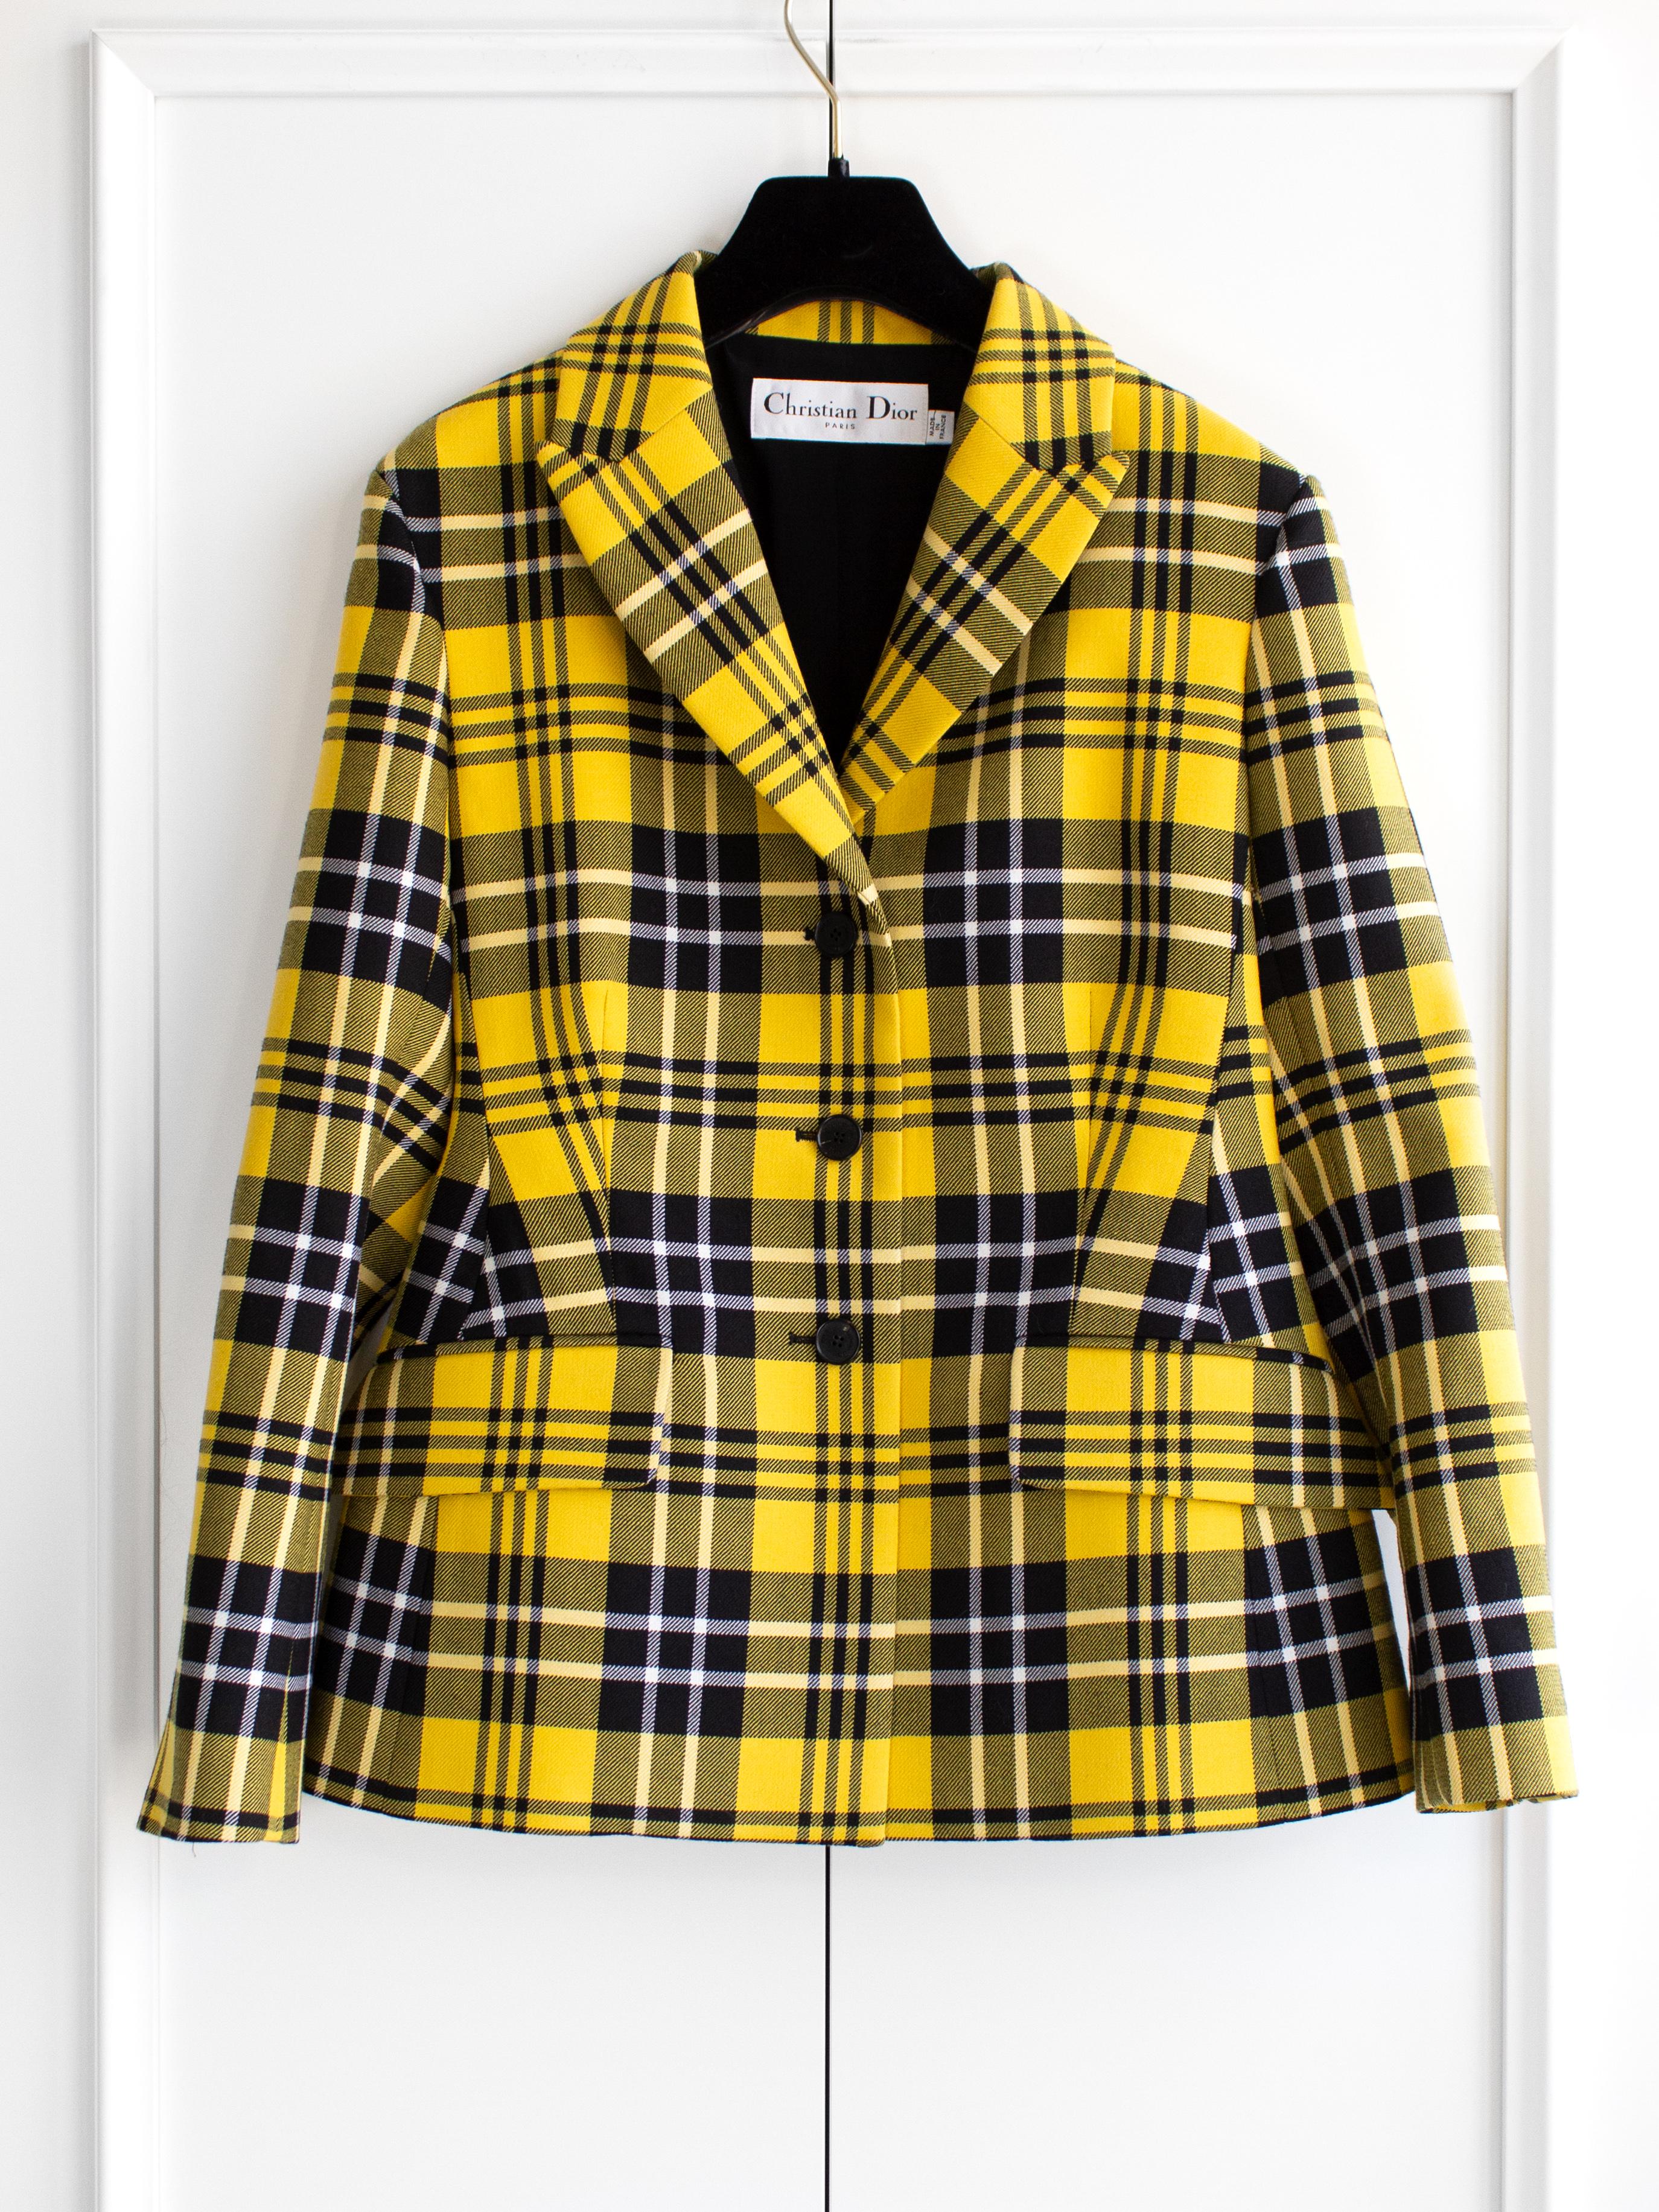 Découvrez la pièce la plus tendance de la collection automne/hiver 2022 de Dior : le blazer bar à carreaux jaunes et noirs. Il a l'allure d'un uniforme d'écolier, avec un clin d'œil au look emblématique de Cher Horowitz dans 